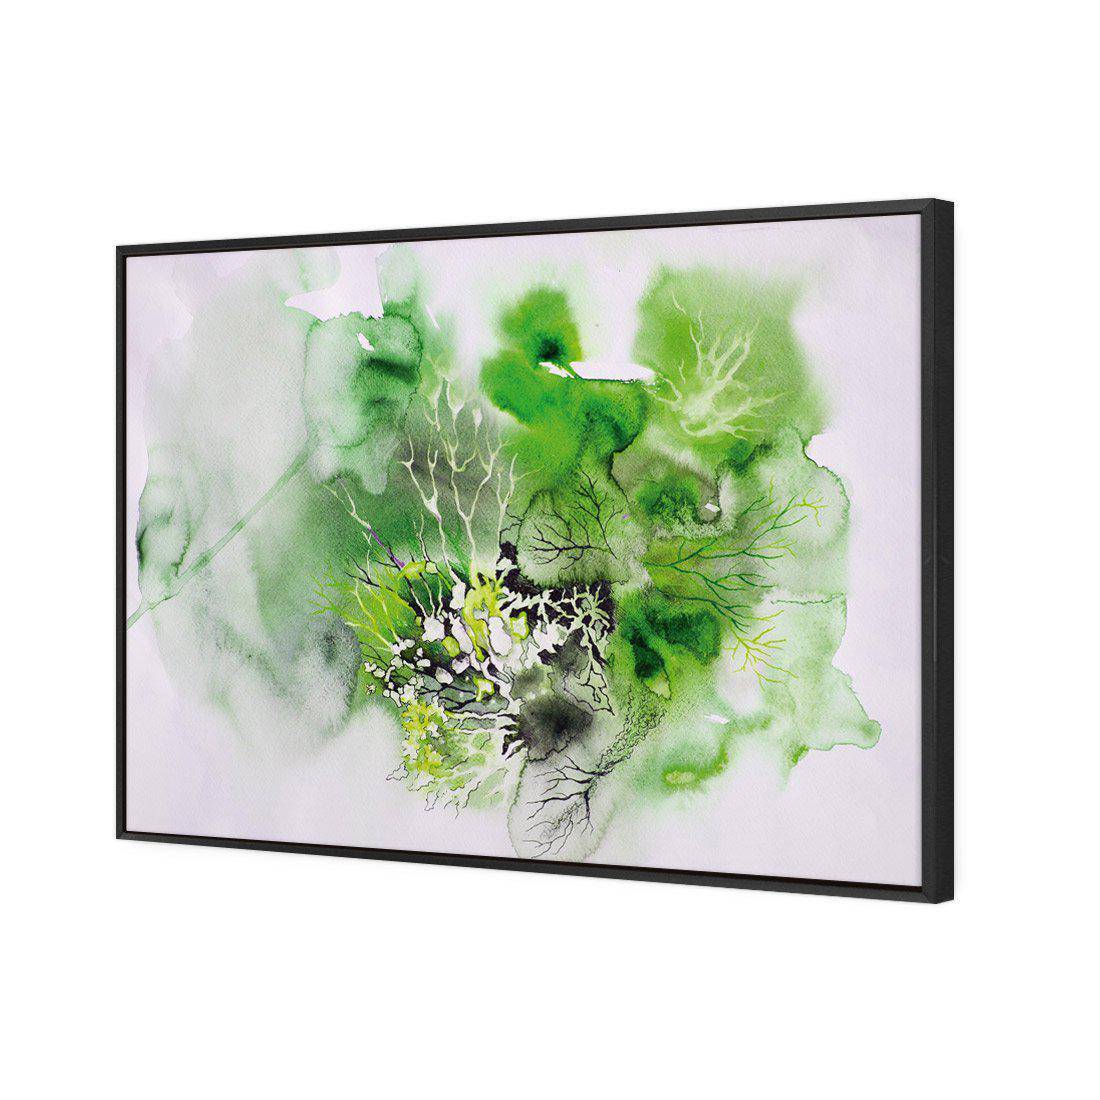 Veins Of Life Green Canvas Art-Canvas-Wall Art Designs-45x30cm-Canvas - Black Frame-Wall Art Designs